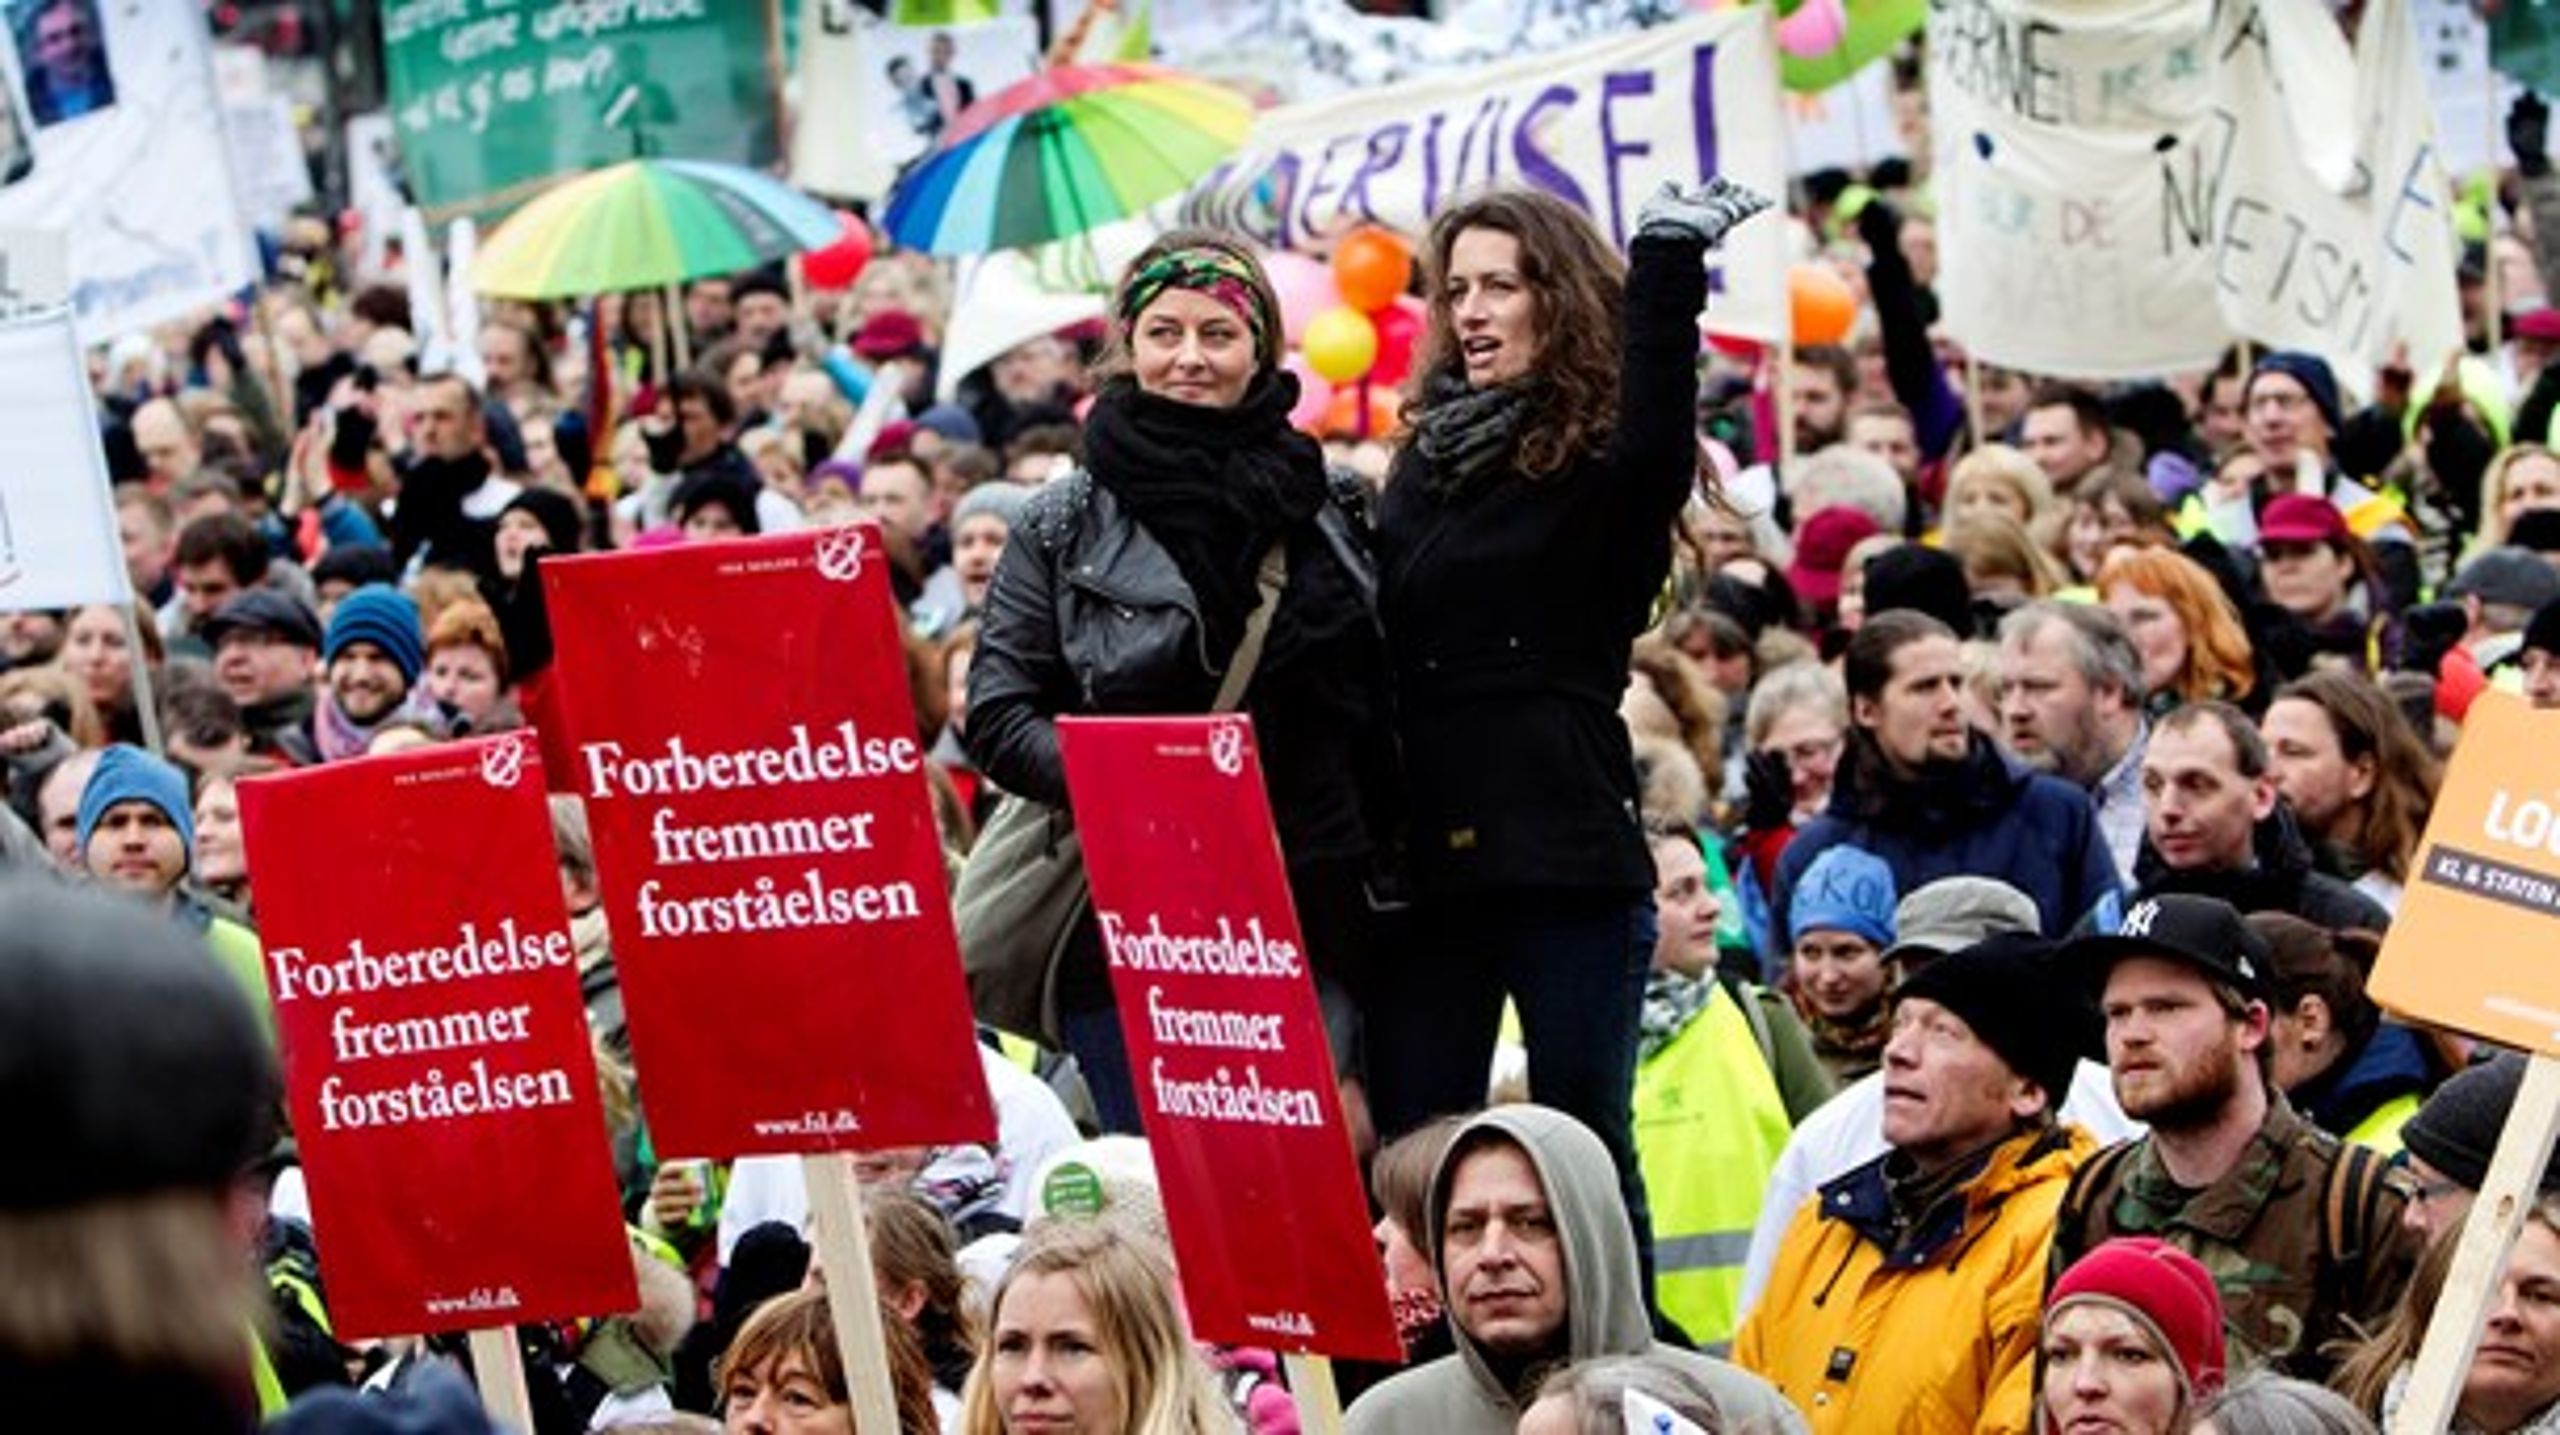 STREJKE: Hvis det igen bliver staten, der skal lovgive om en løsning for at standse strejker og lockout, så får den danske model alvorlige ridser i lakken, skriver Lisbeth Knudsen (arkivfoto).